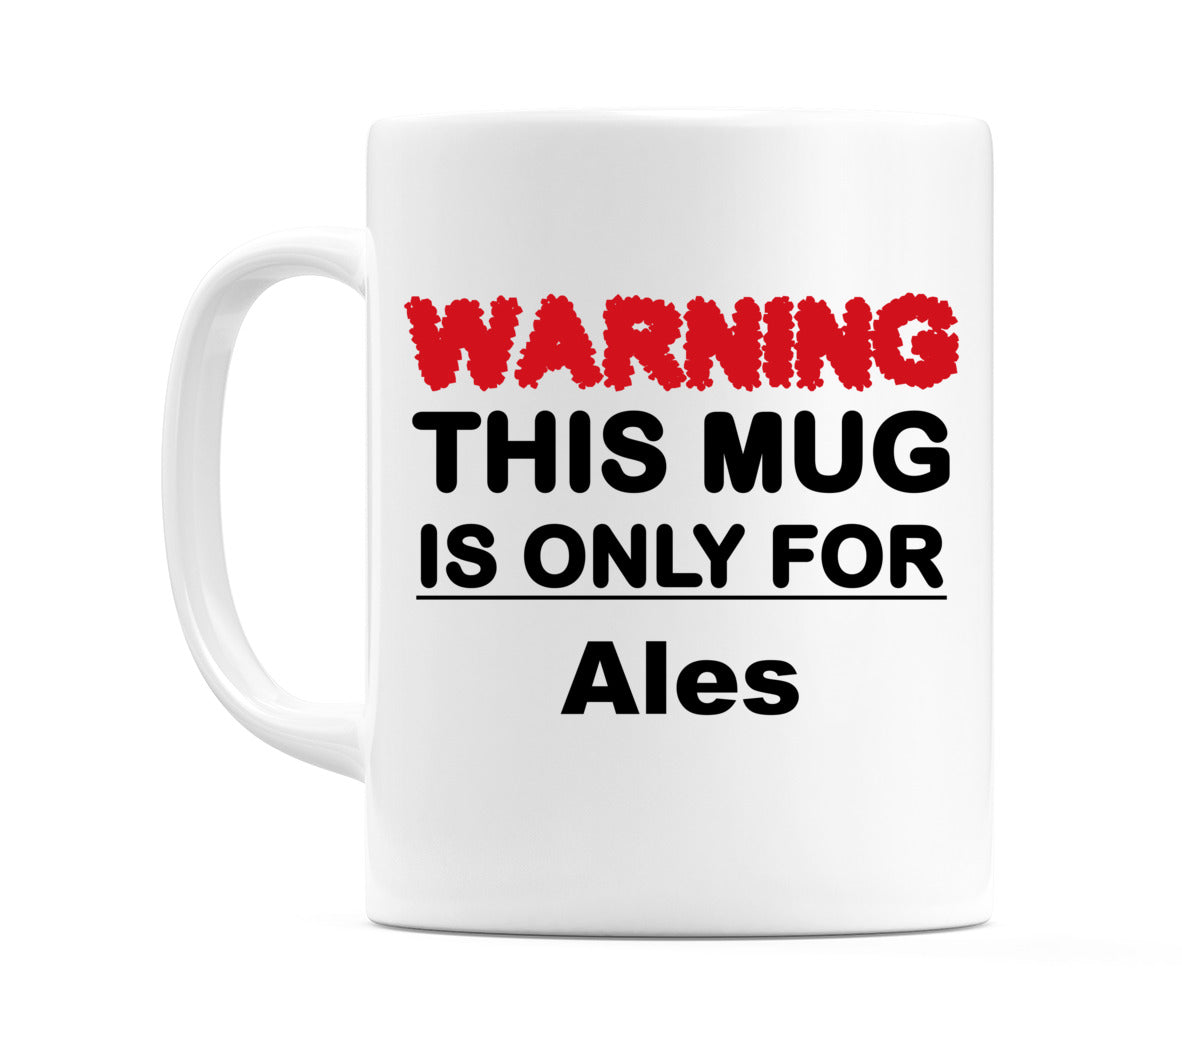 Warning This Mug is ONLY for Ales Mug